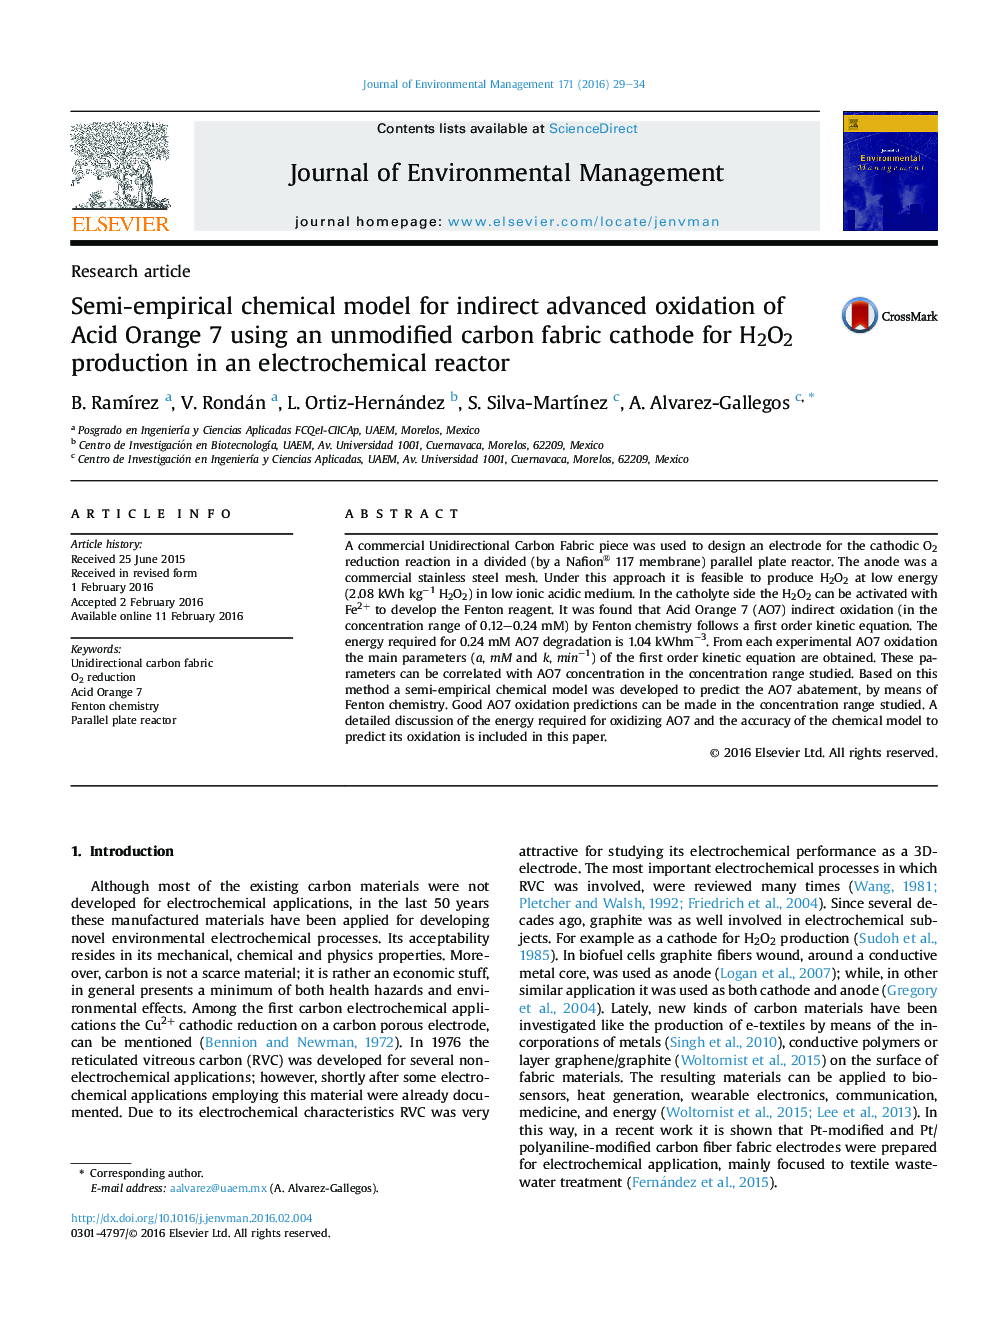 مدل های شیمیایی نیمه تجربی برای اکسیداسیون پیشرفته غیر مستقیم اسید نارنجی 7 با استفاده از یک کاتد پارچه کربن اصلاح نشده برای تولید H2O2 در یک راکتور الکتروشیمیایی